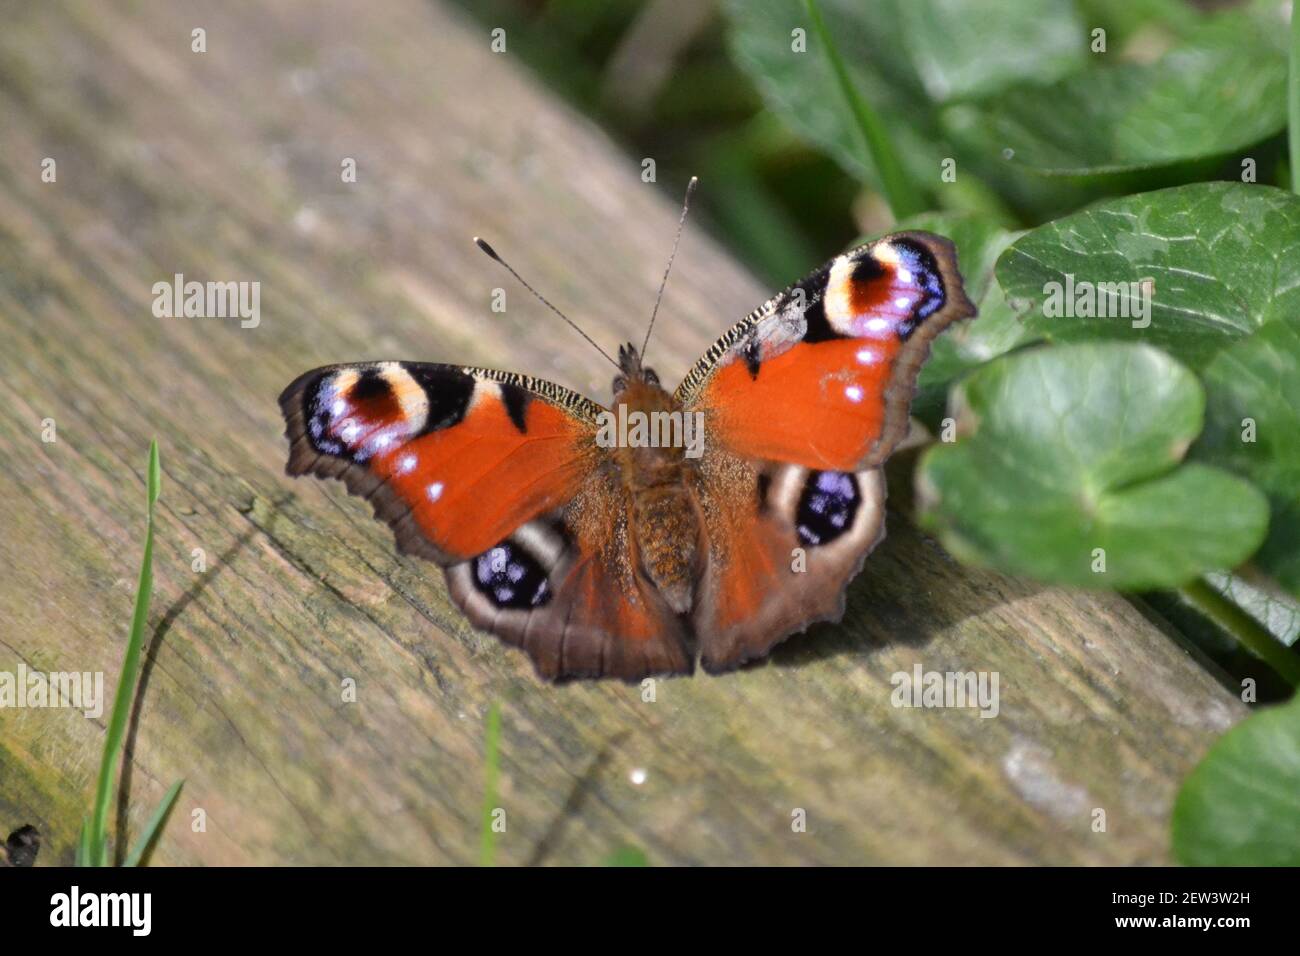 Pfau Schmetterling auf Plank aus Holz - Inachis io - Garteninsekt - Mehrfarbig - Schmetterling auf EINEM sonnigen Tag - Wingspan 63mm - Filey - Yorkshire UK Stockfoto